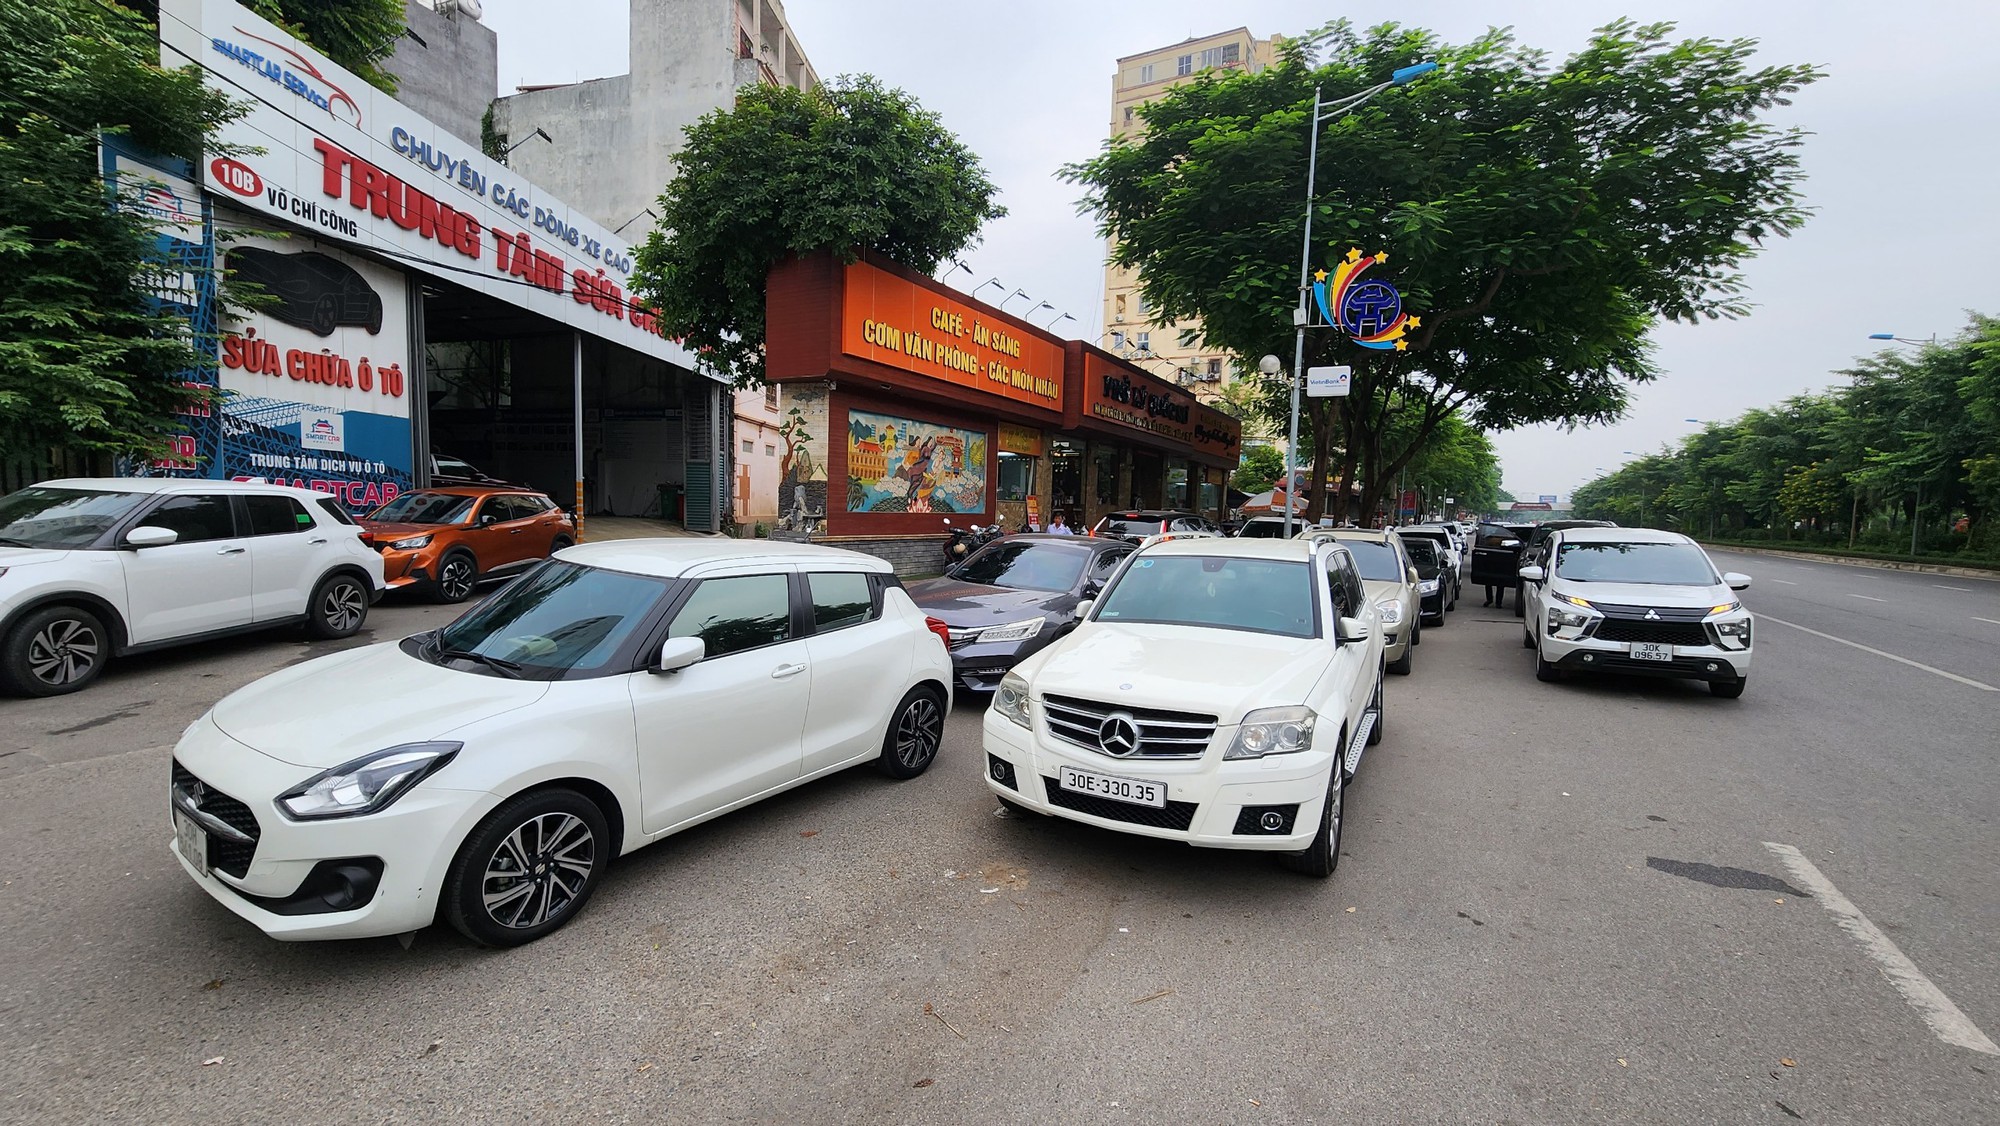   Hà Nội: Ngang nhiên biến vỉa hè, lòng đường Võ Chí Công thành nơi đỗ xe, kinh doanh  - Ảnh 1.